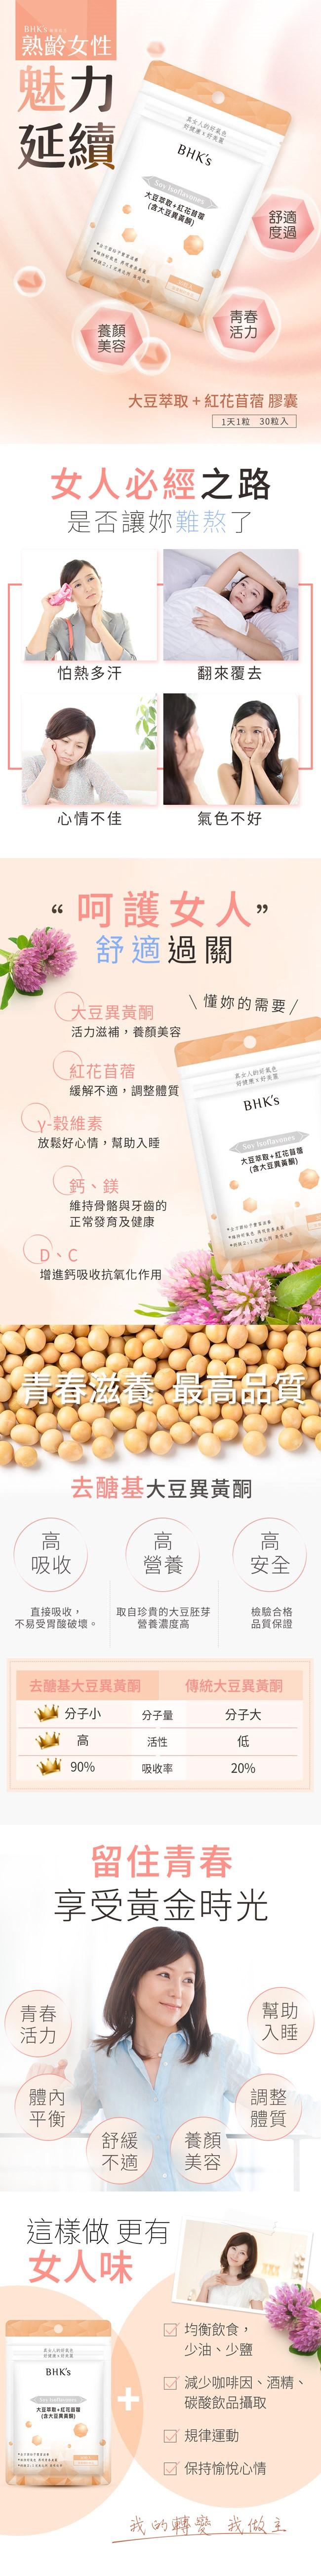 BHK's 大豆萃取+紅花苜蓿膠囊食品(30顆/袋)﻿產品資訊